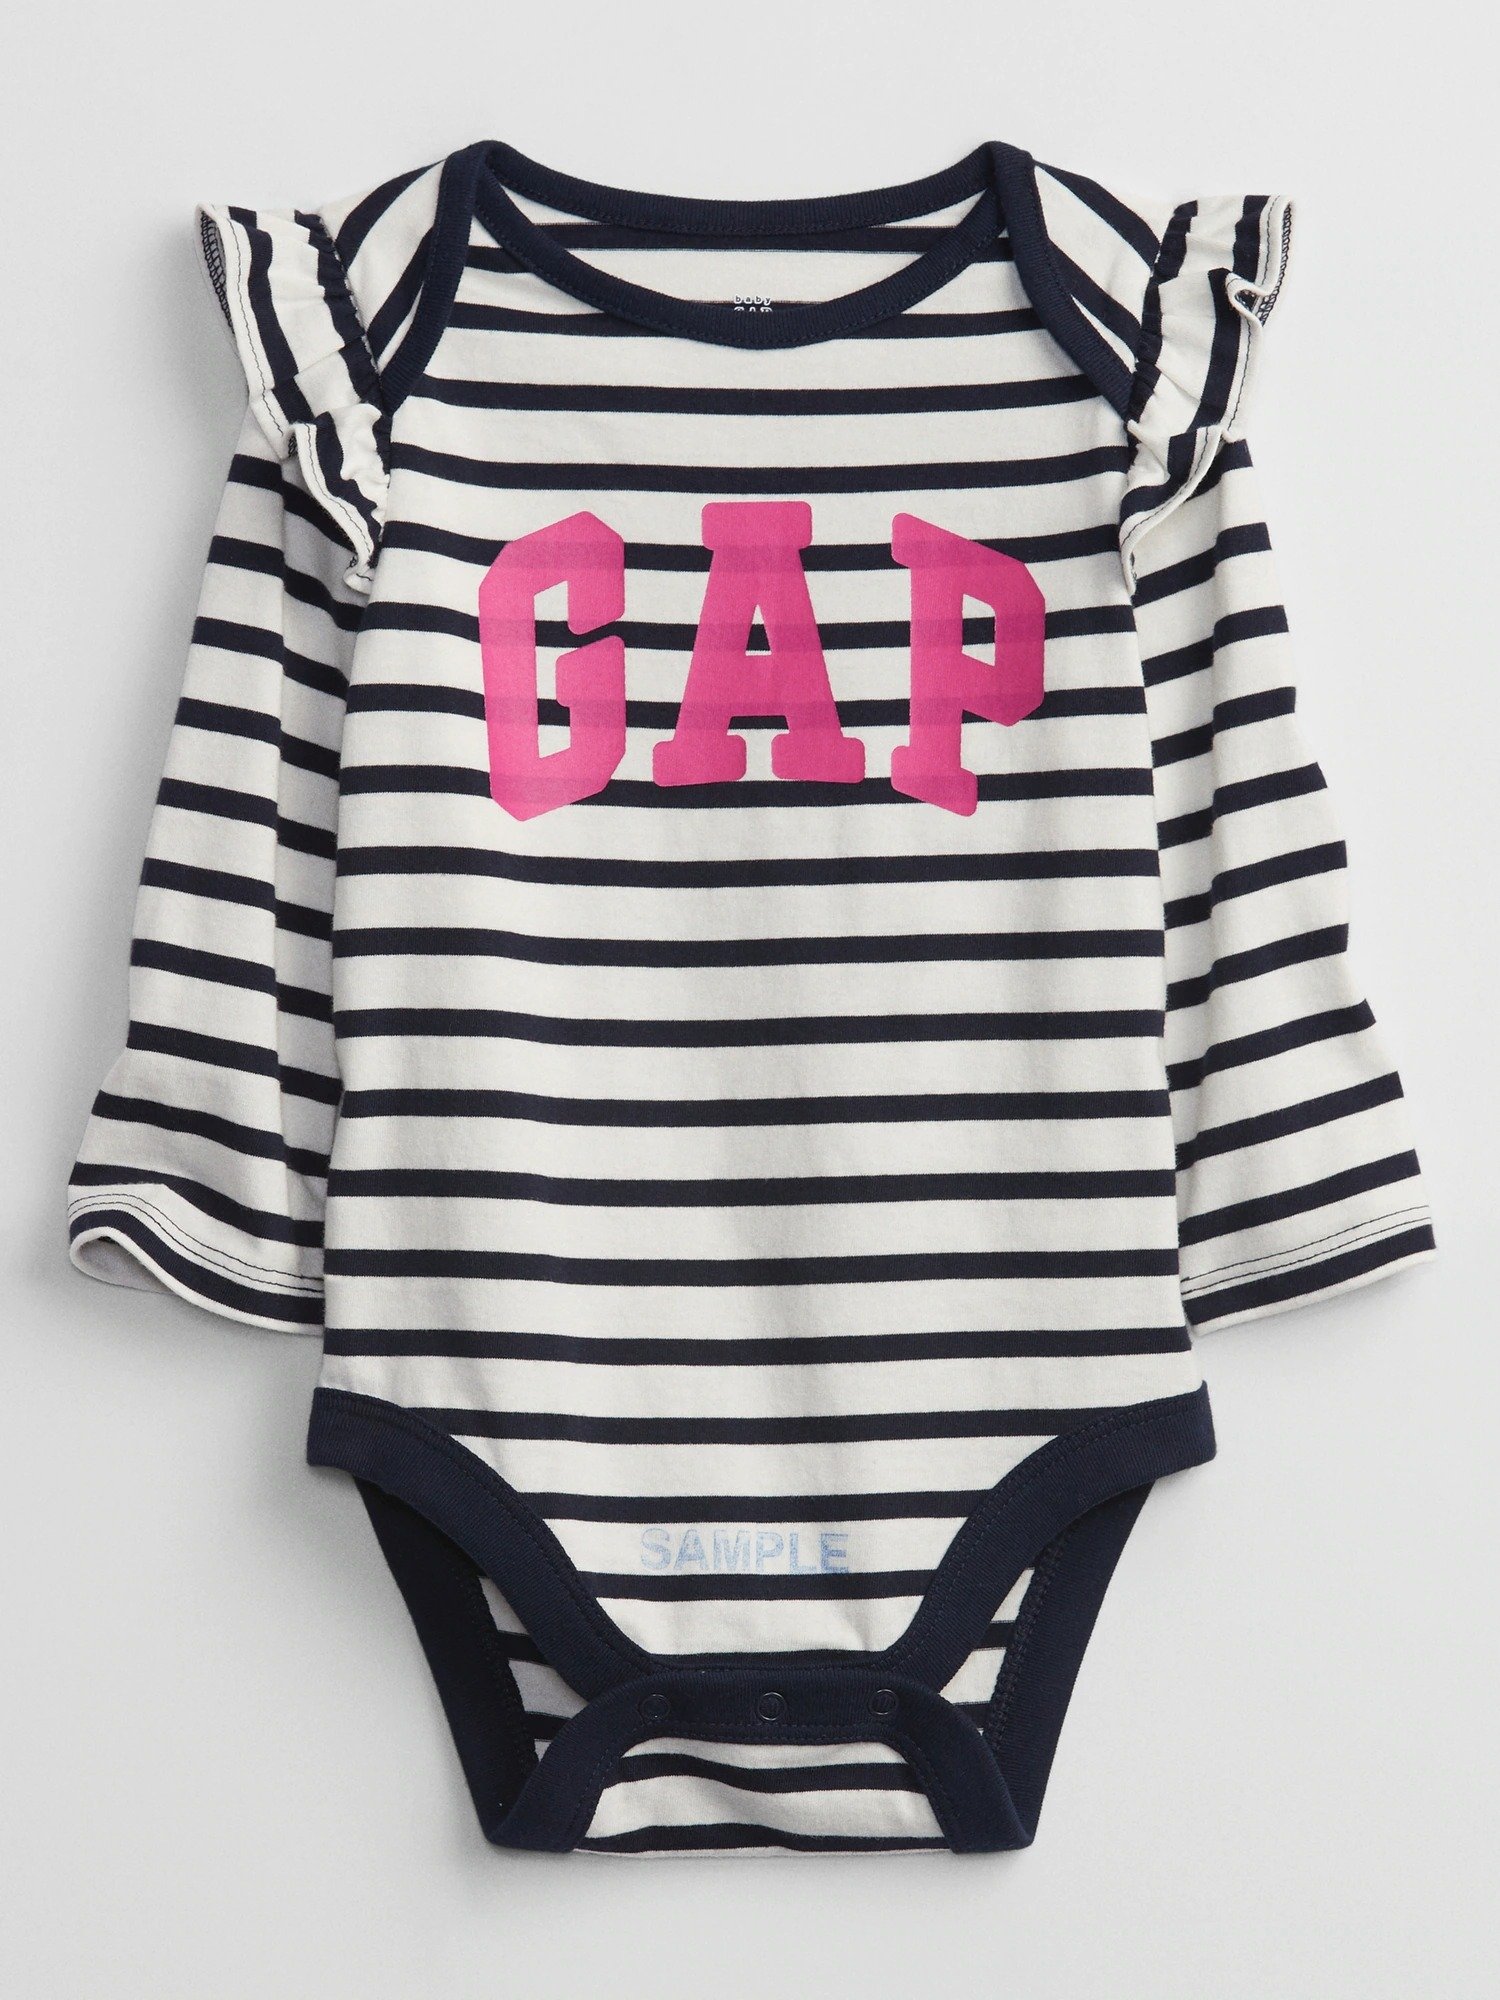 Gap Logo Baby Bodysuit product image